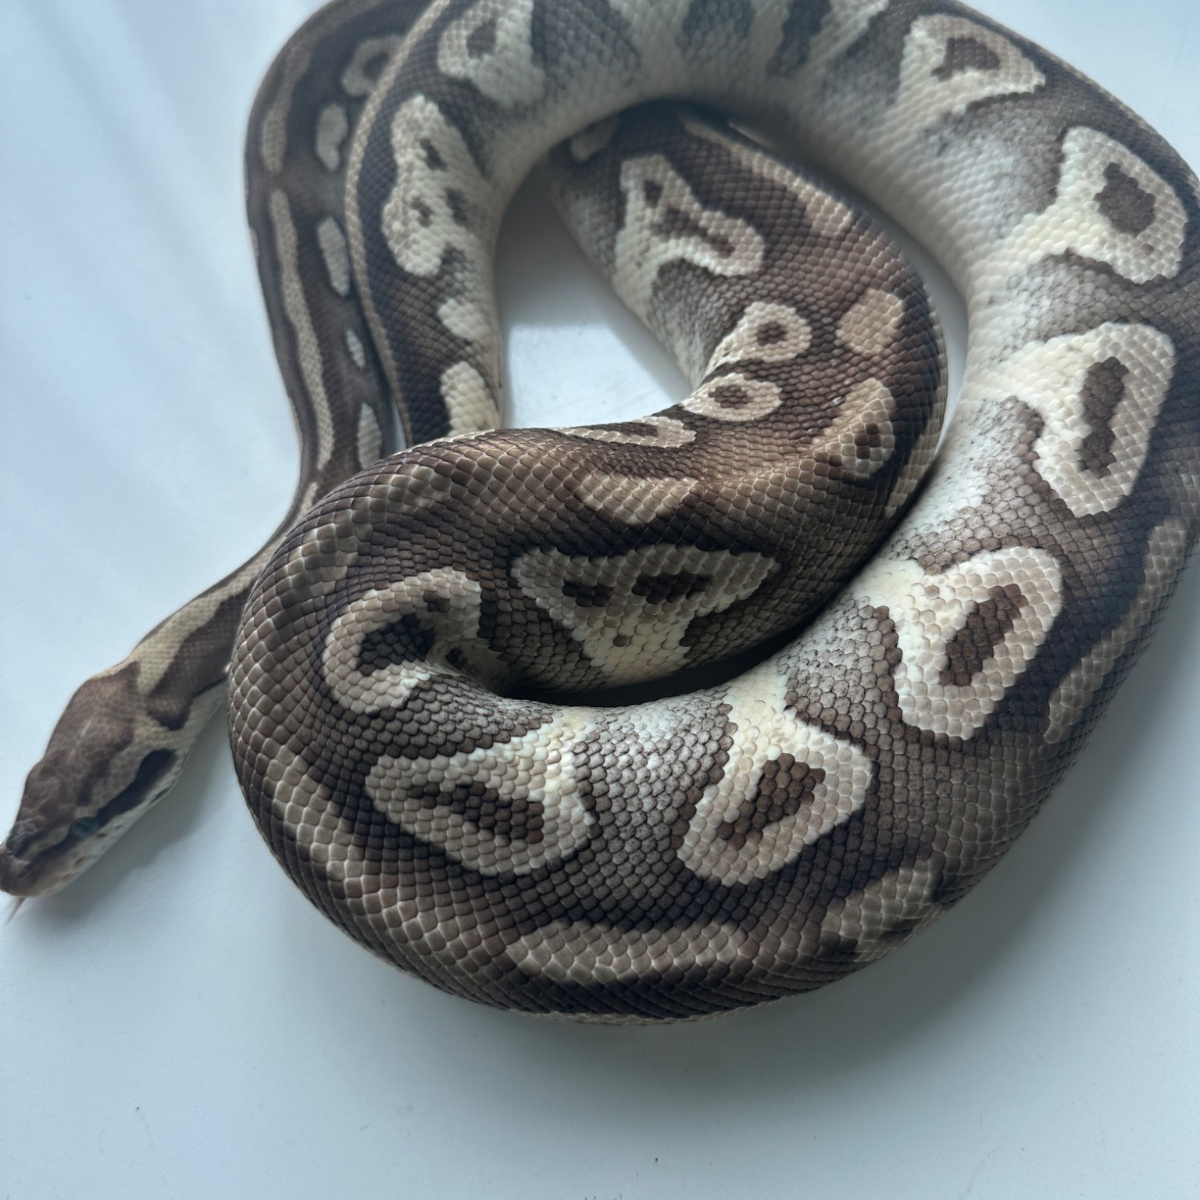 ball python mojave male adult